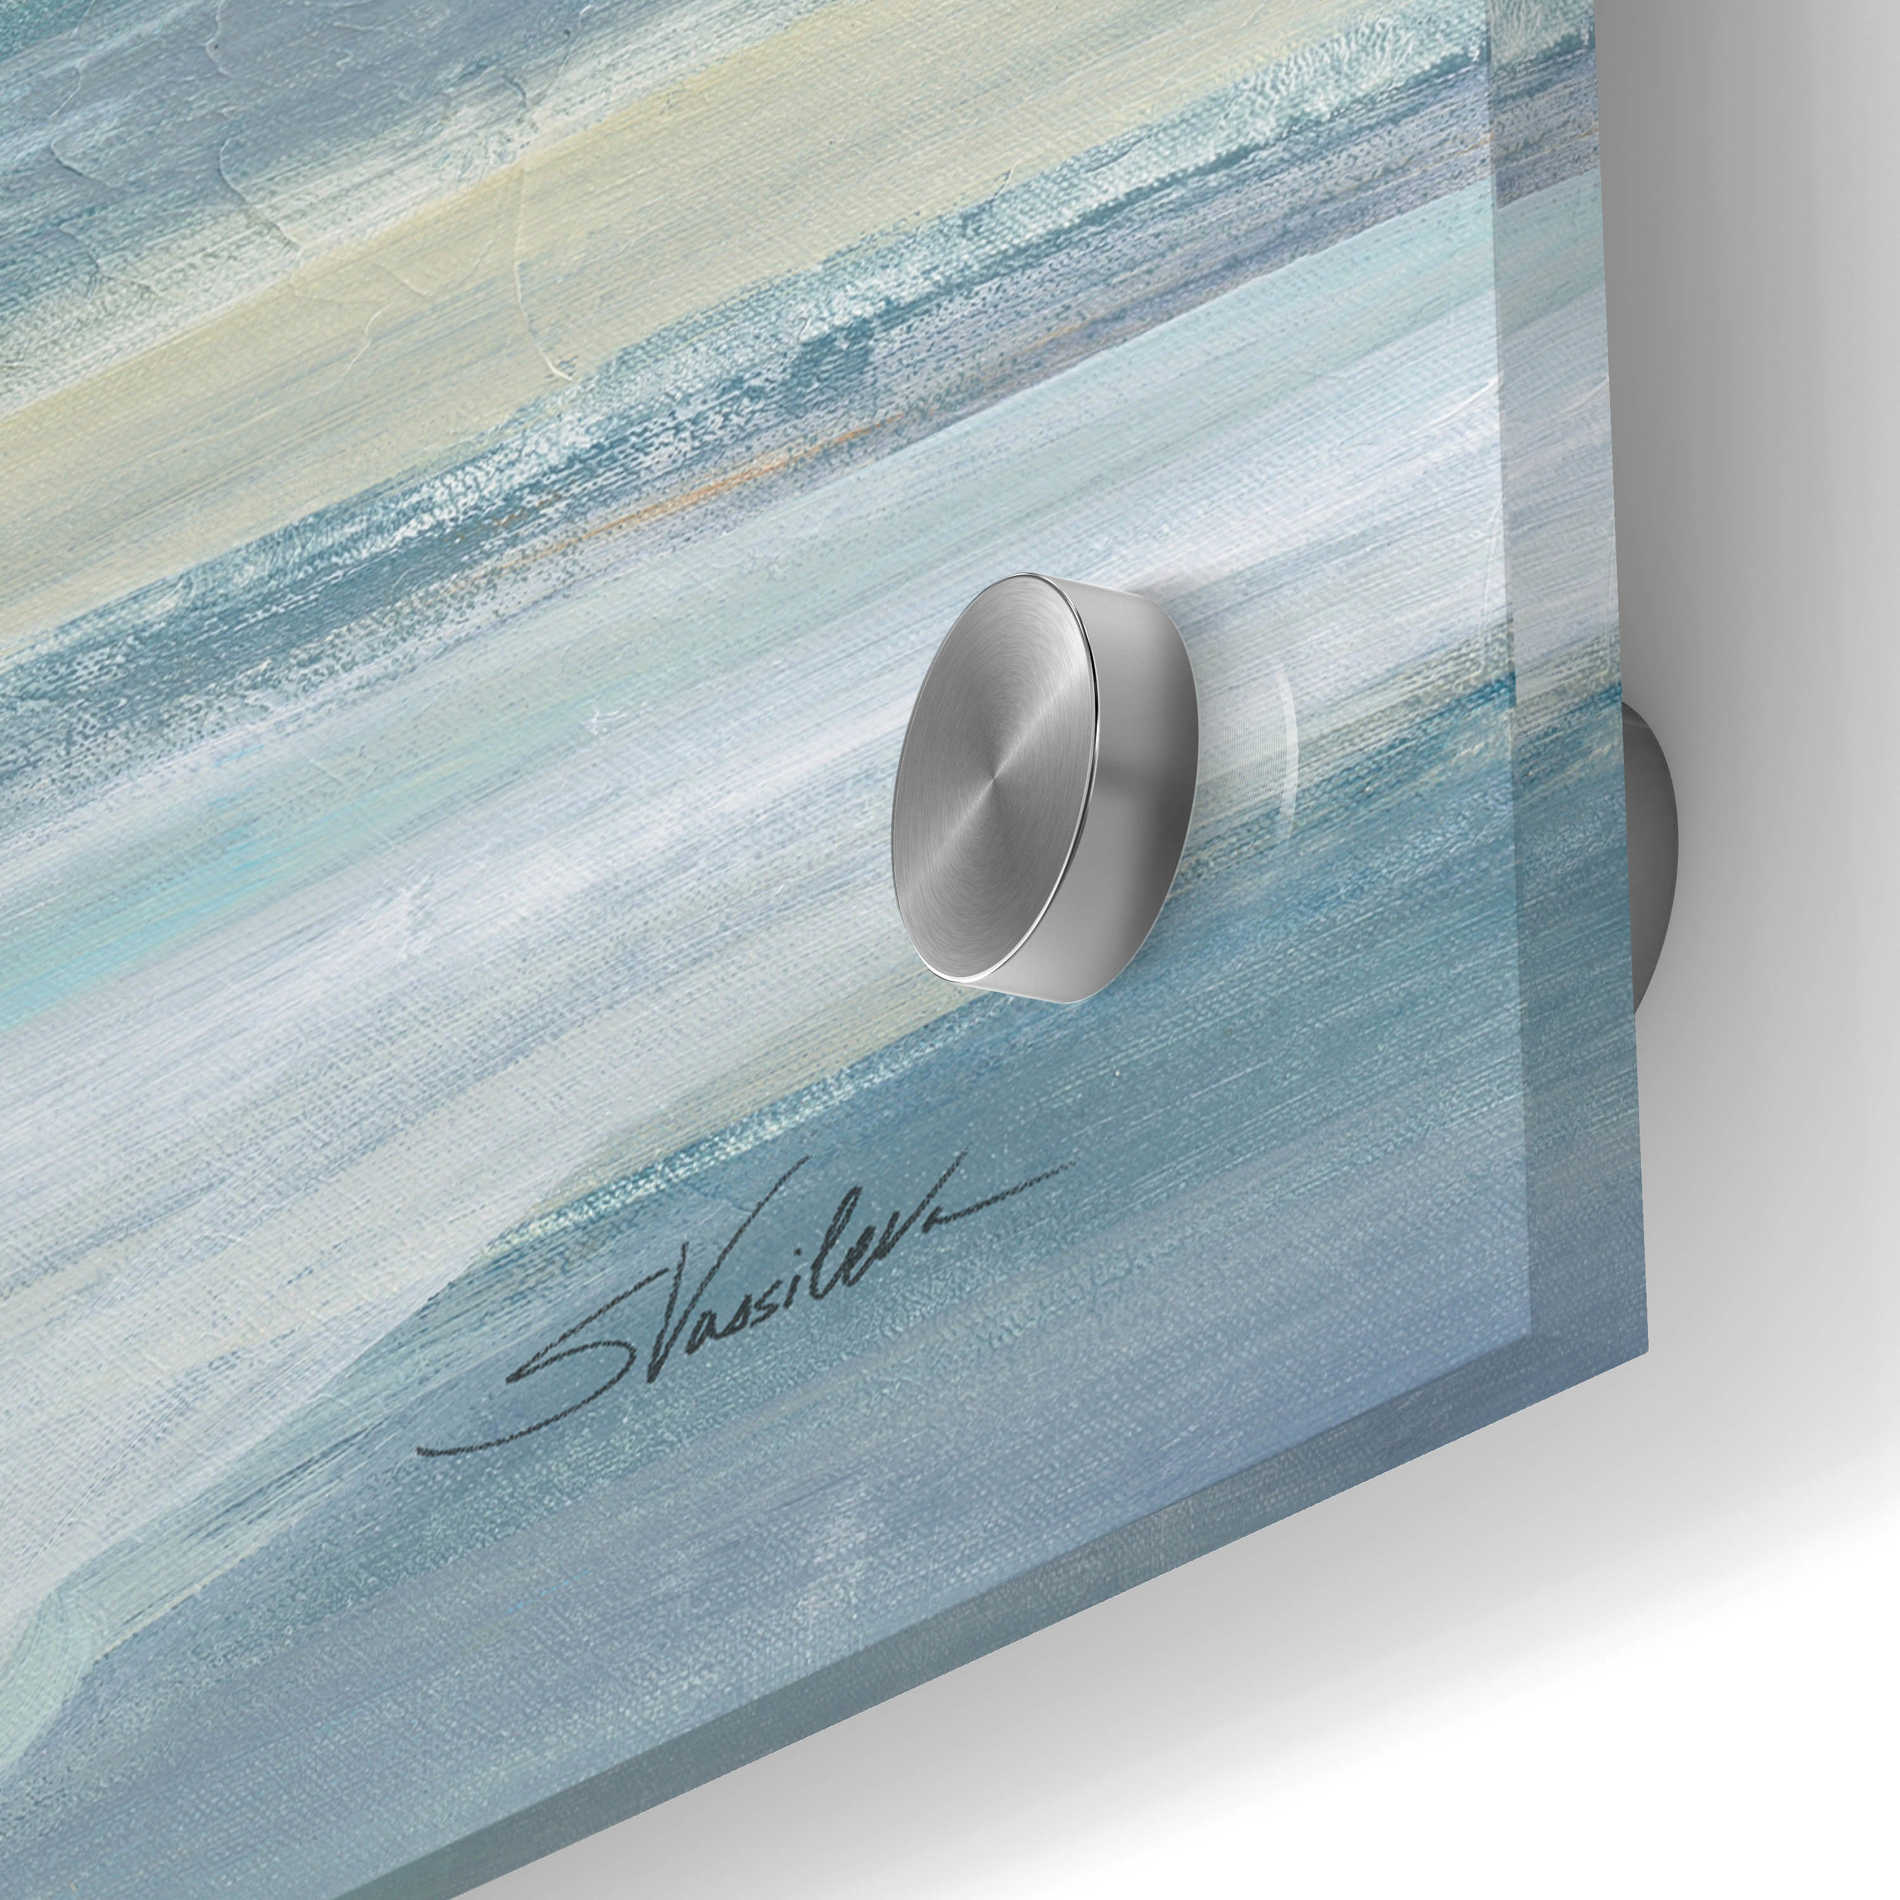 Epic Art 'Morning Sea Light' by Silvia Vassileva, Acrylic Glass Wall Art,24x24